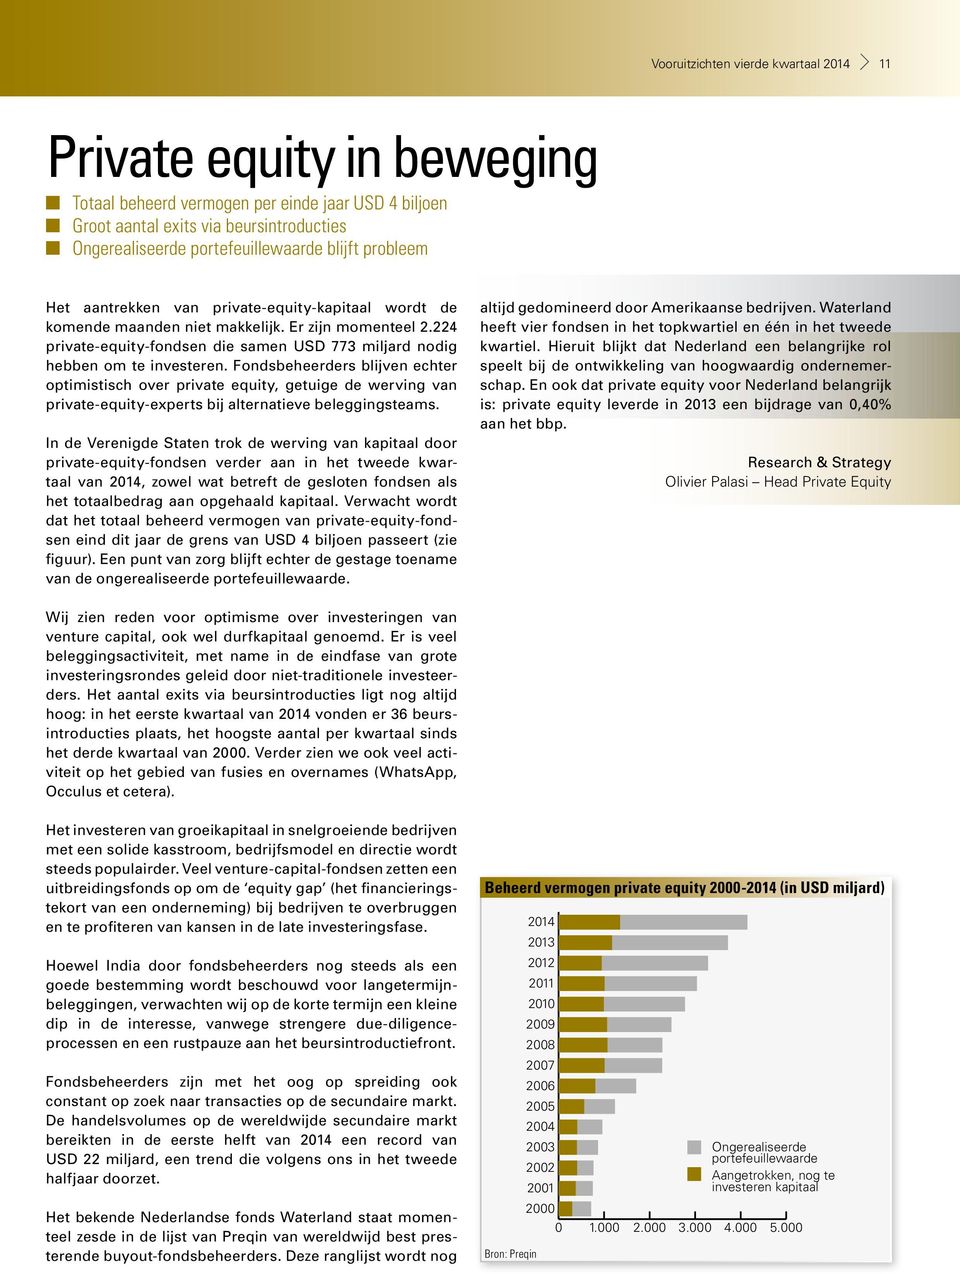 224 private-equity-fondsen die samen USD 773 miljard nodig hebben om te investeren.